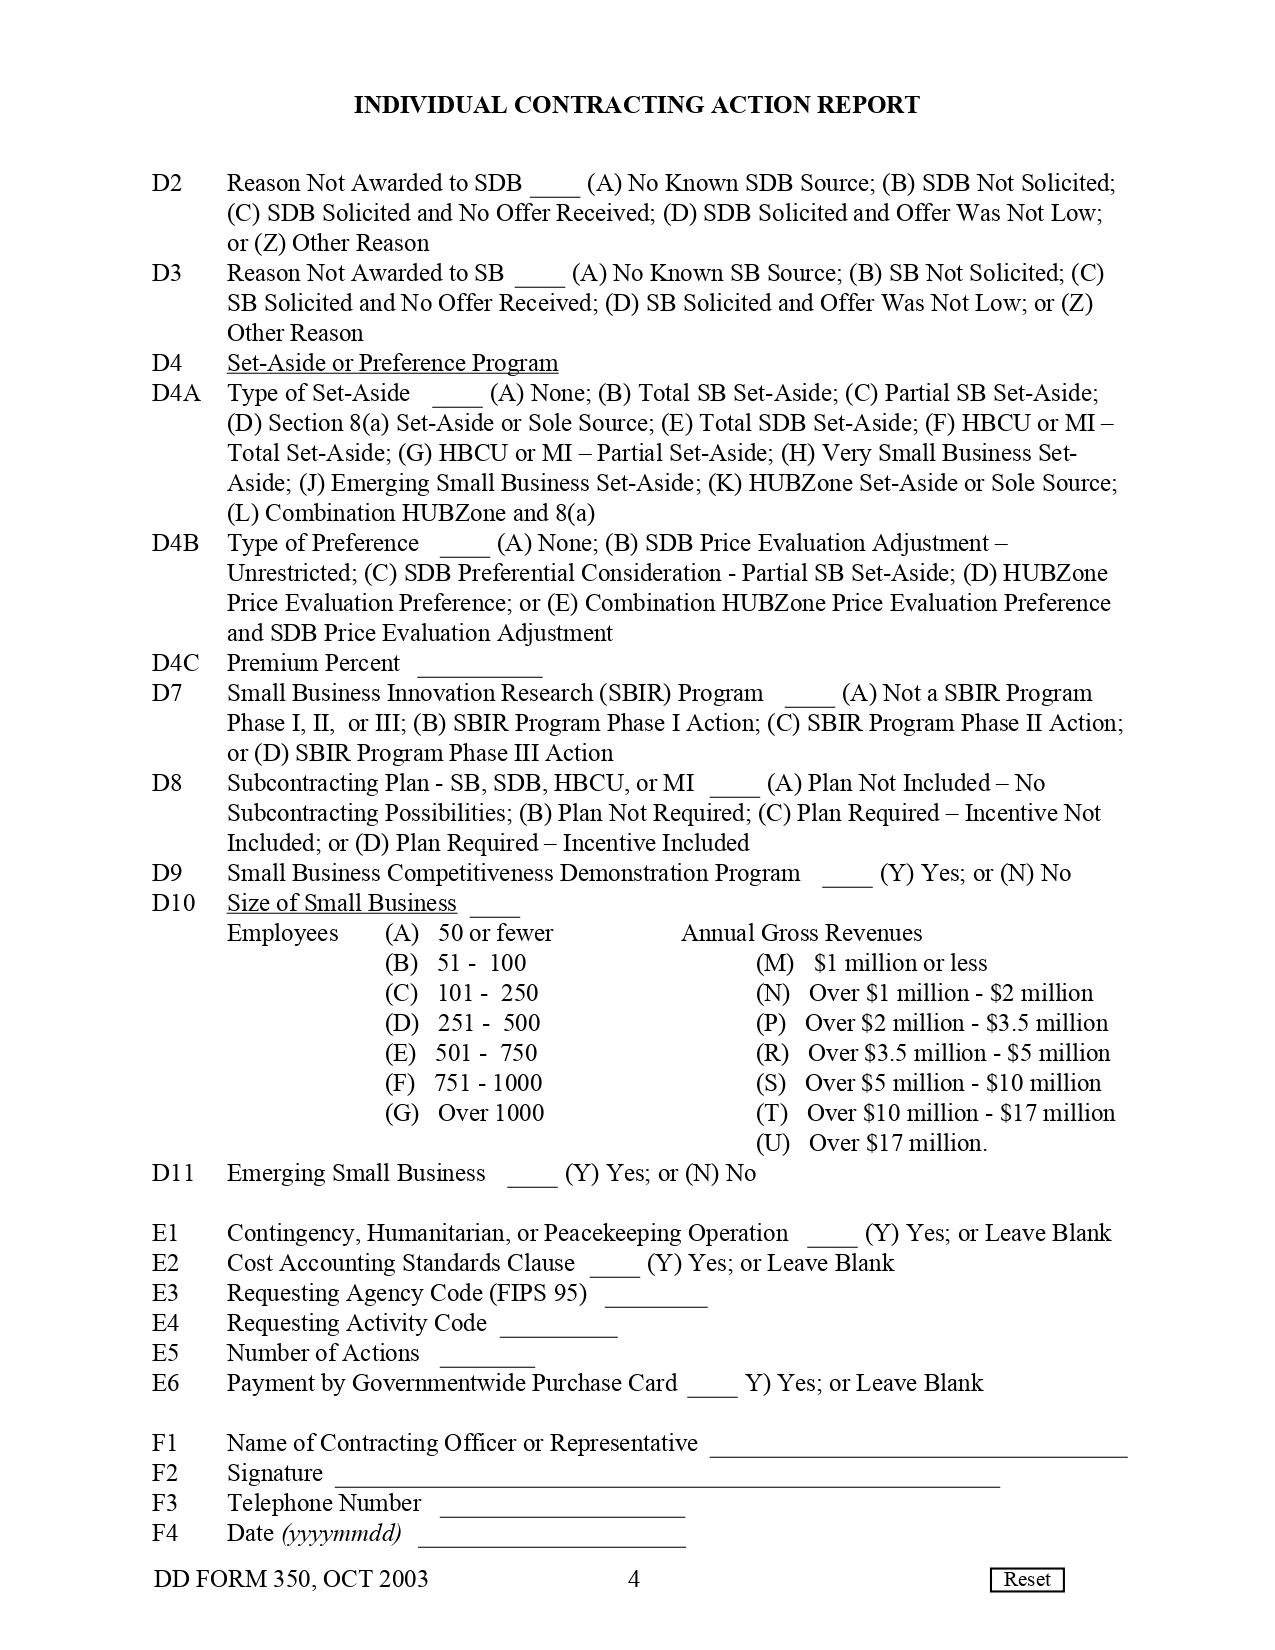 DD Form 350 - Page 4